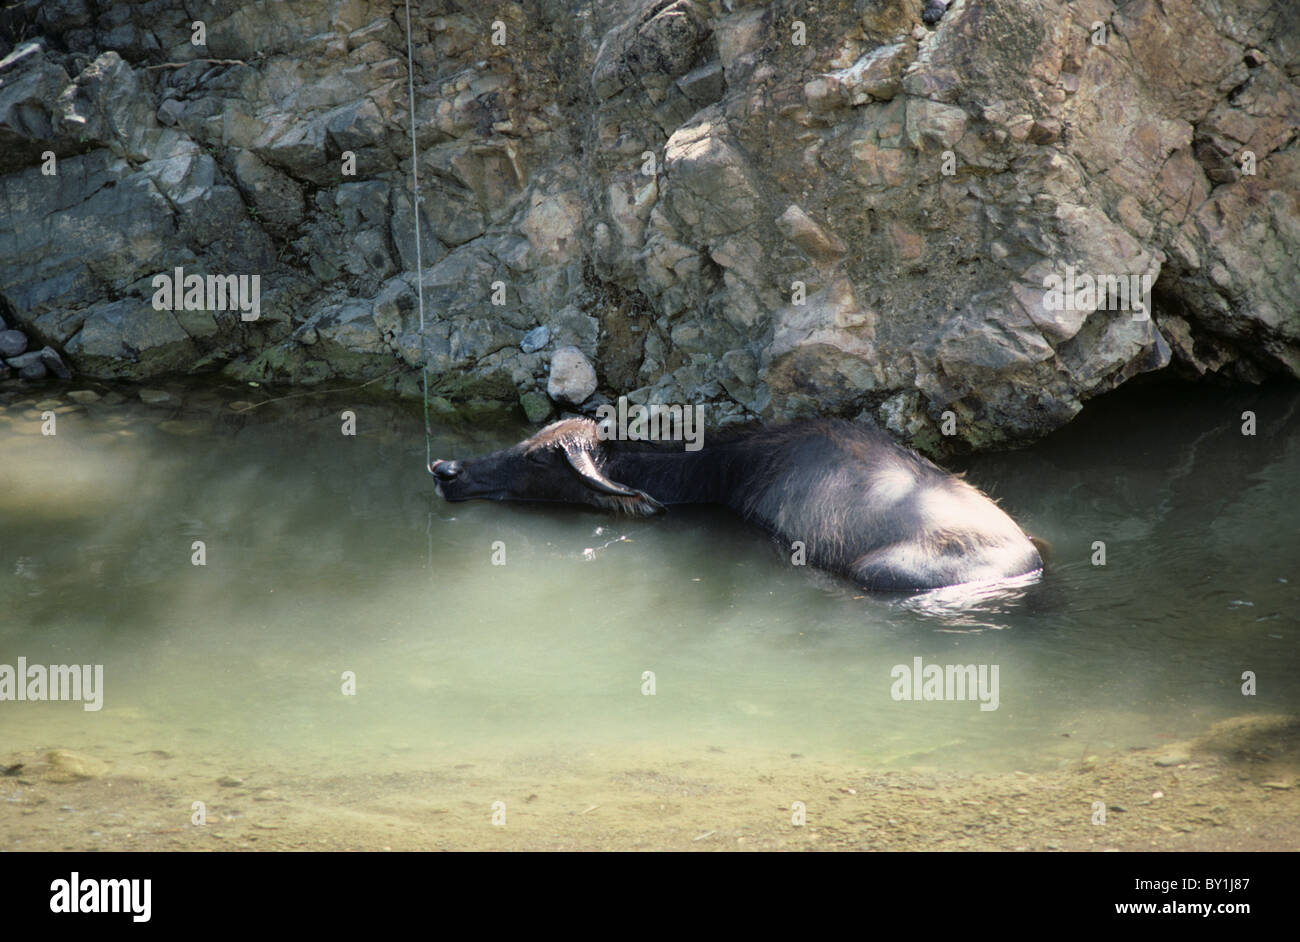 Búfalo de agua refrescarse en un arroyo, Cebu, Filipinas Foto de stock